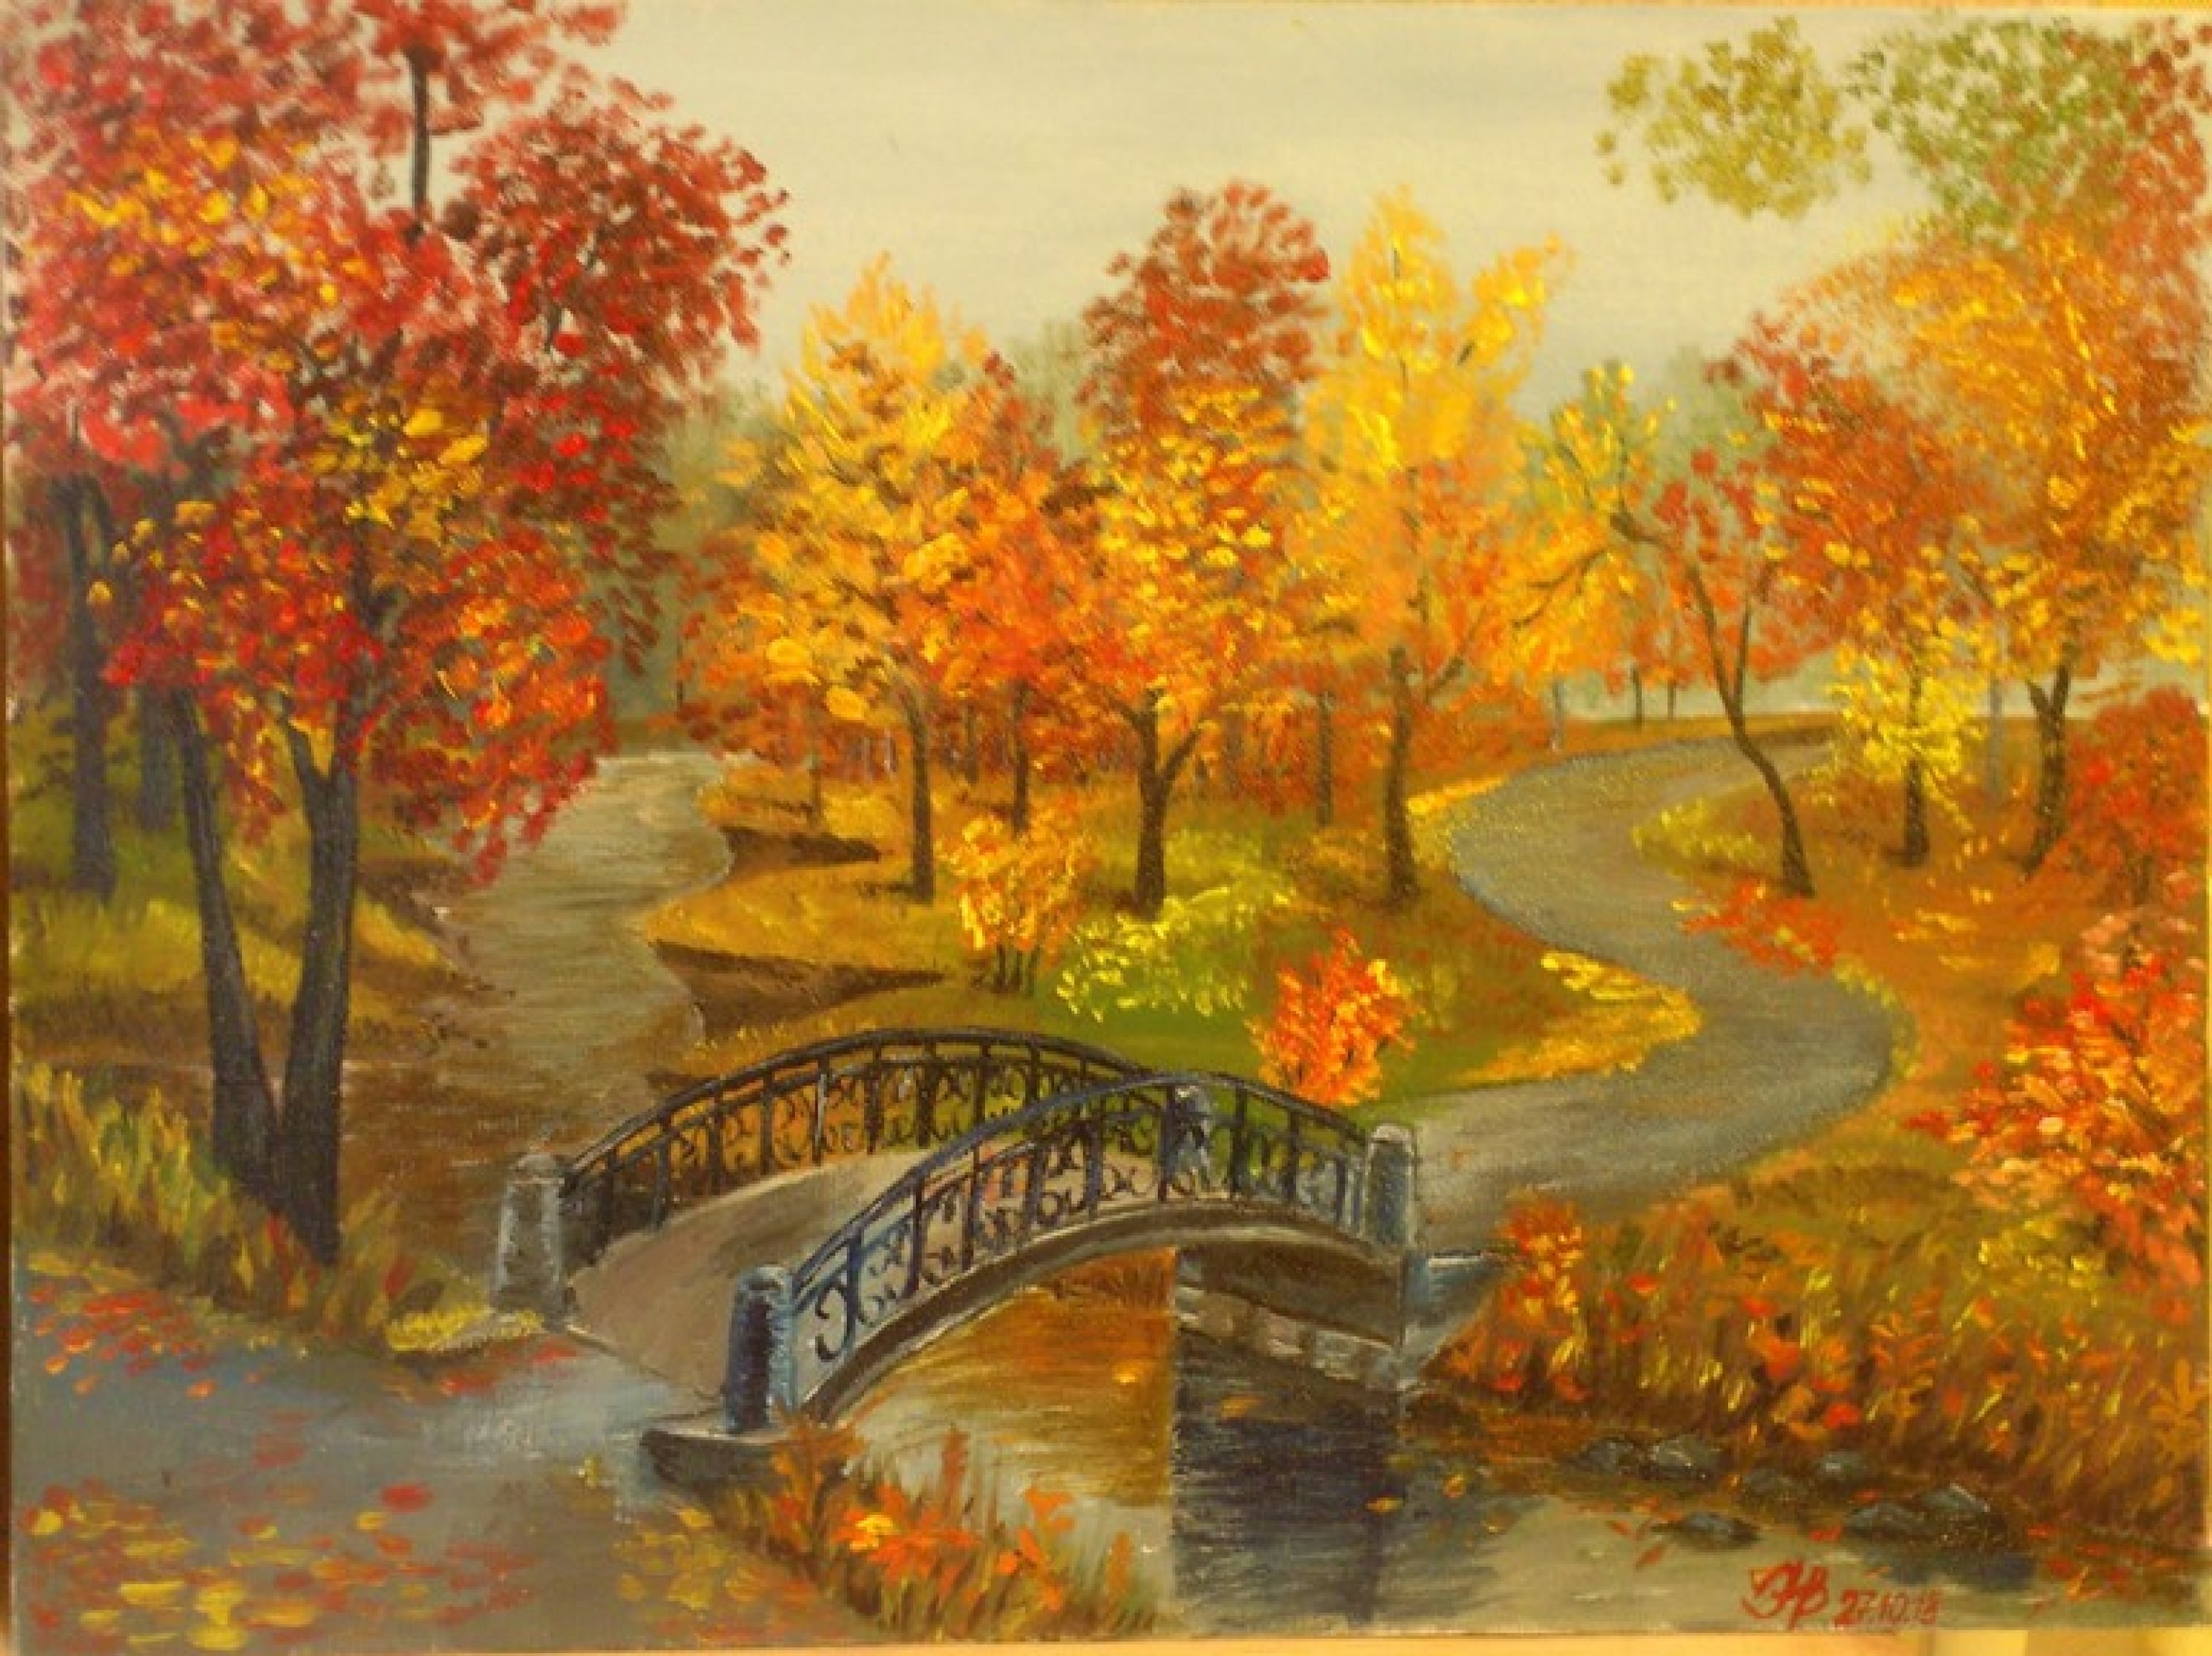 фотография или рисунок родного города сделанные осенью